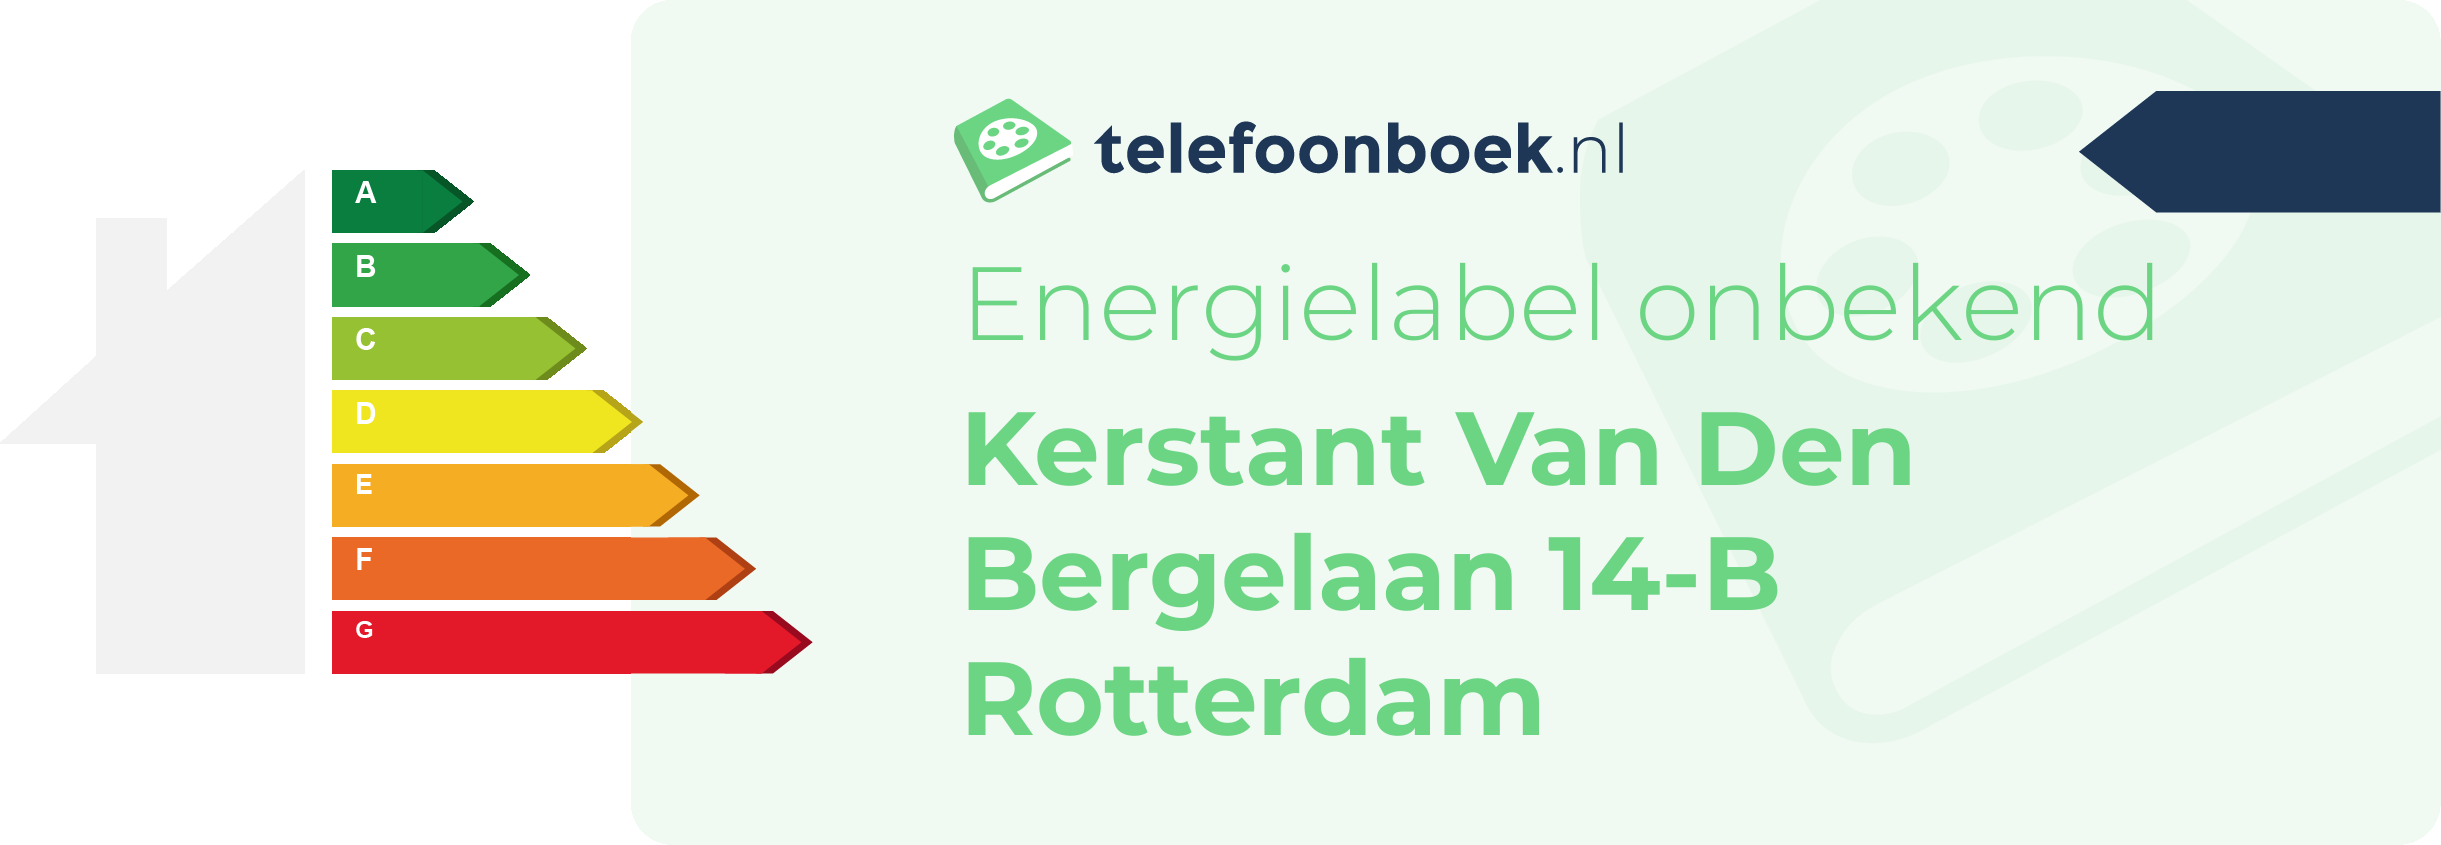 Energielabel Kerstant Van Den Bergelaan 14-B Rotterdam